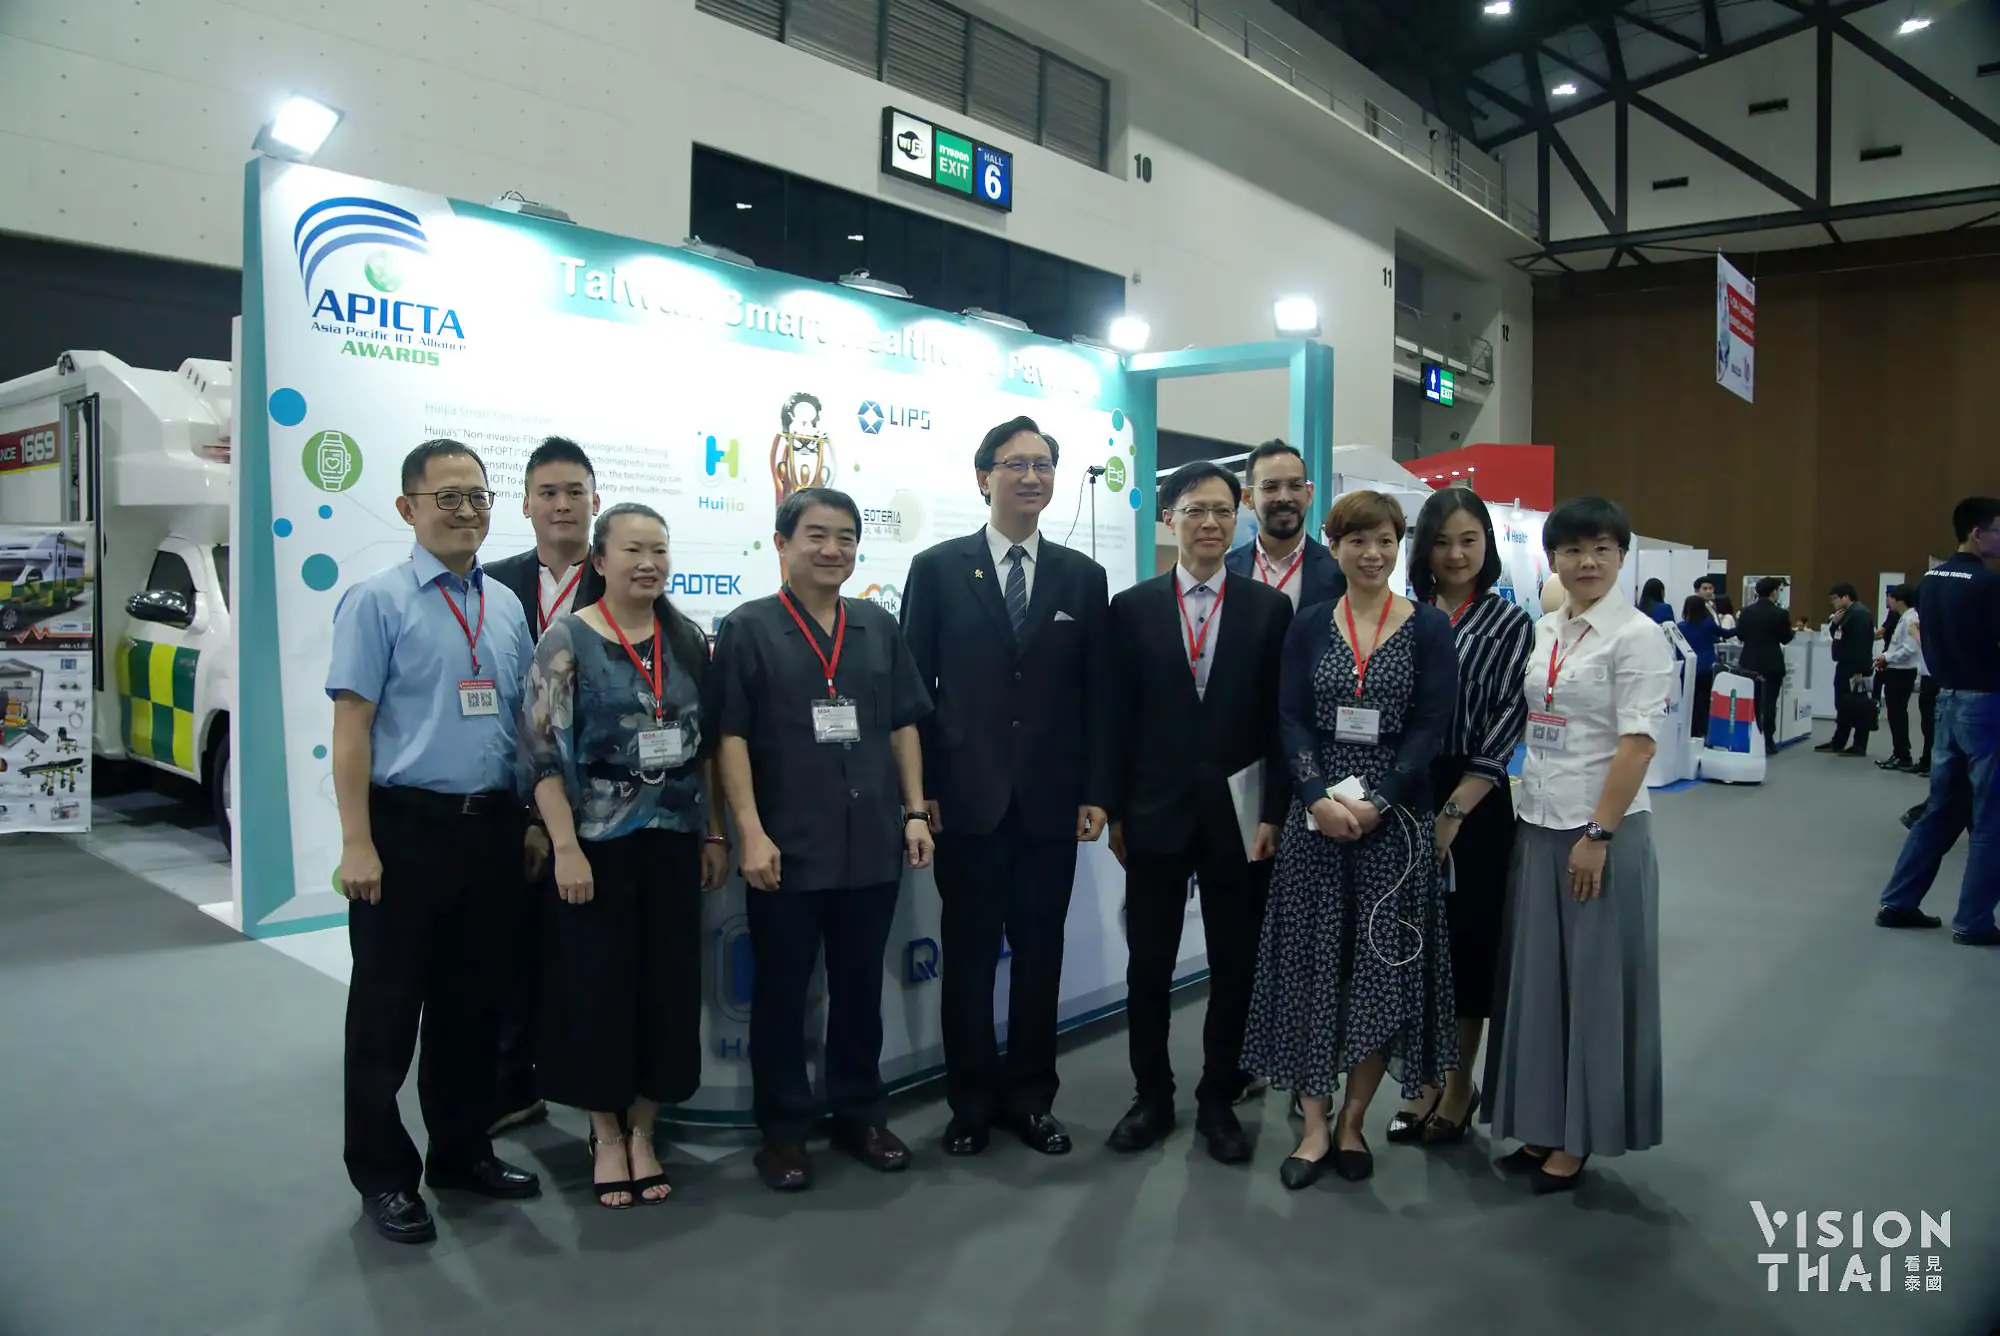 由左至右分别为立普斯、丽台、汇嘉业者代表、台湾医疗暨生技公会理事长、驻泰代表童振源、台湾新竹生医育成中心、太旸科技代表及台北市计算机公会的策展团队